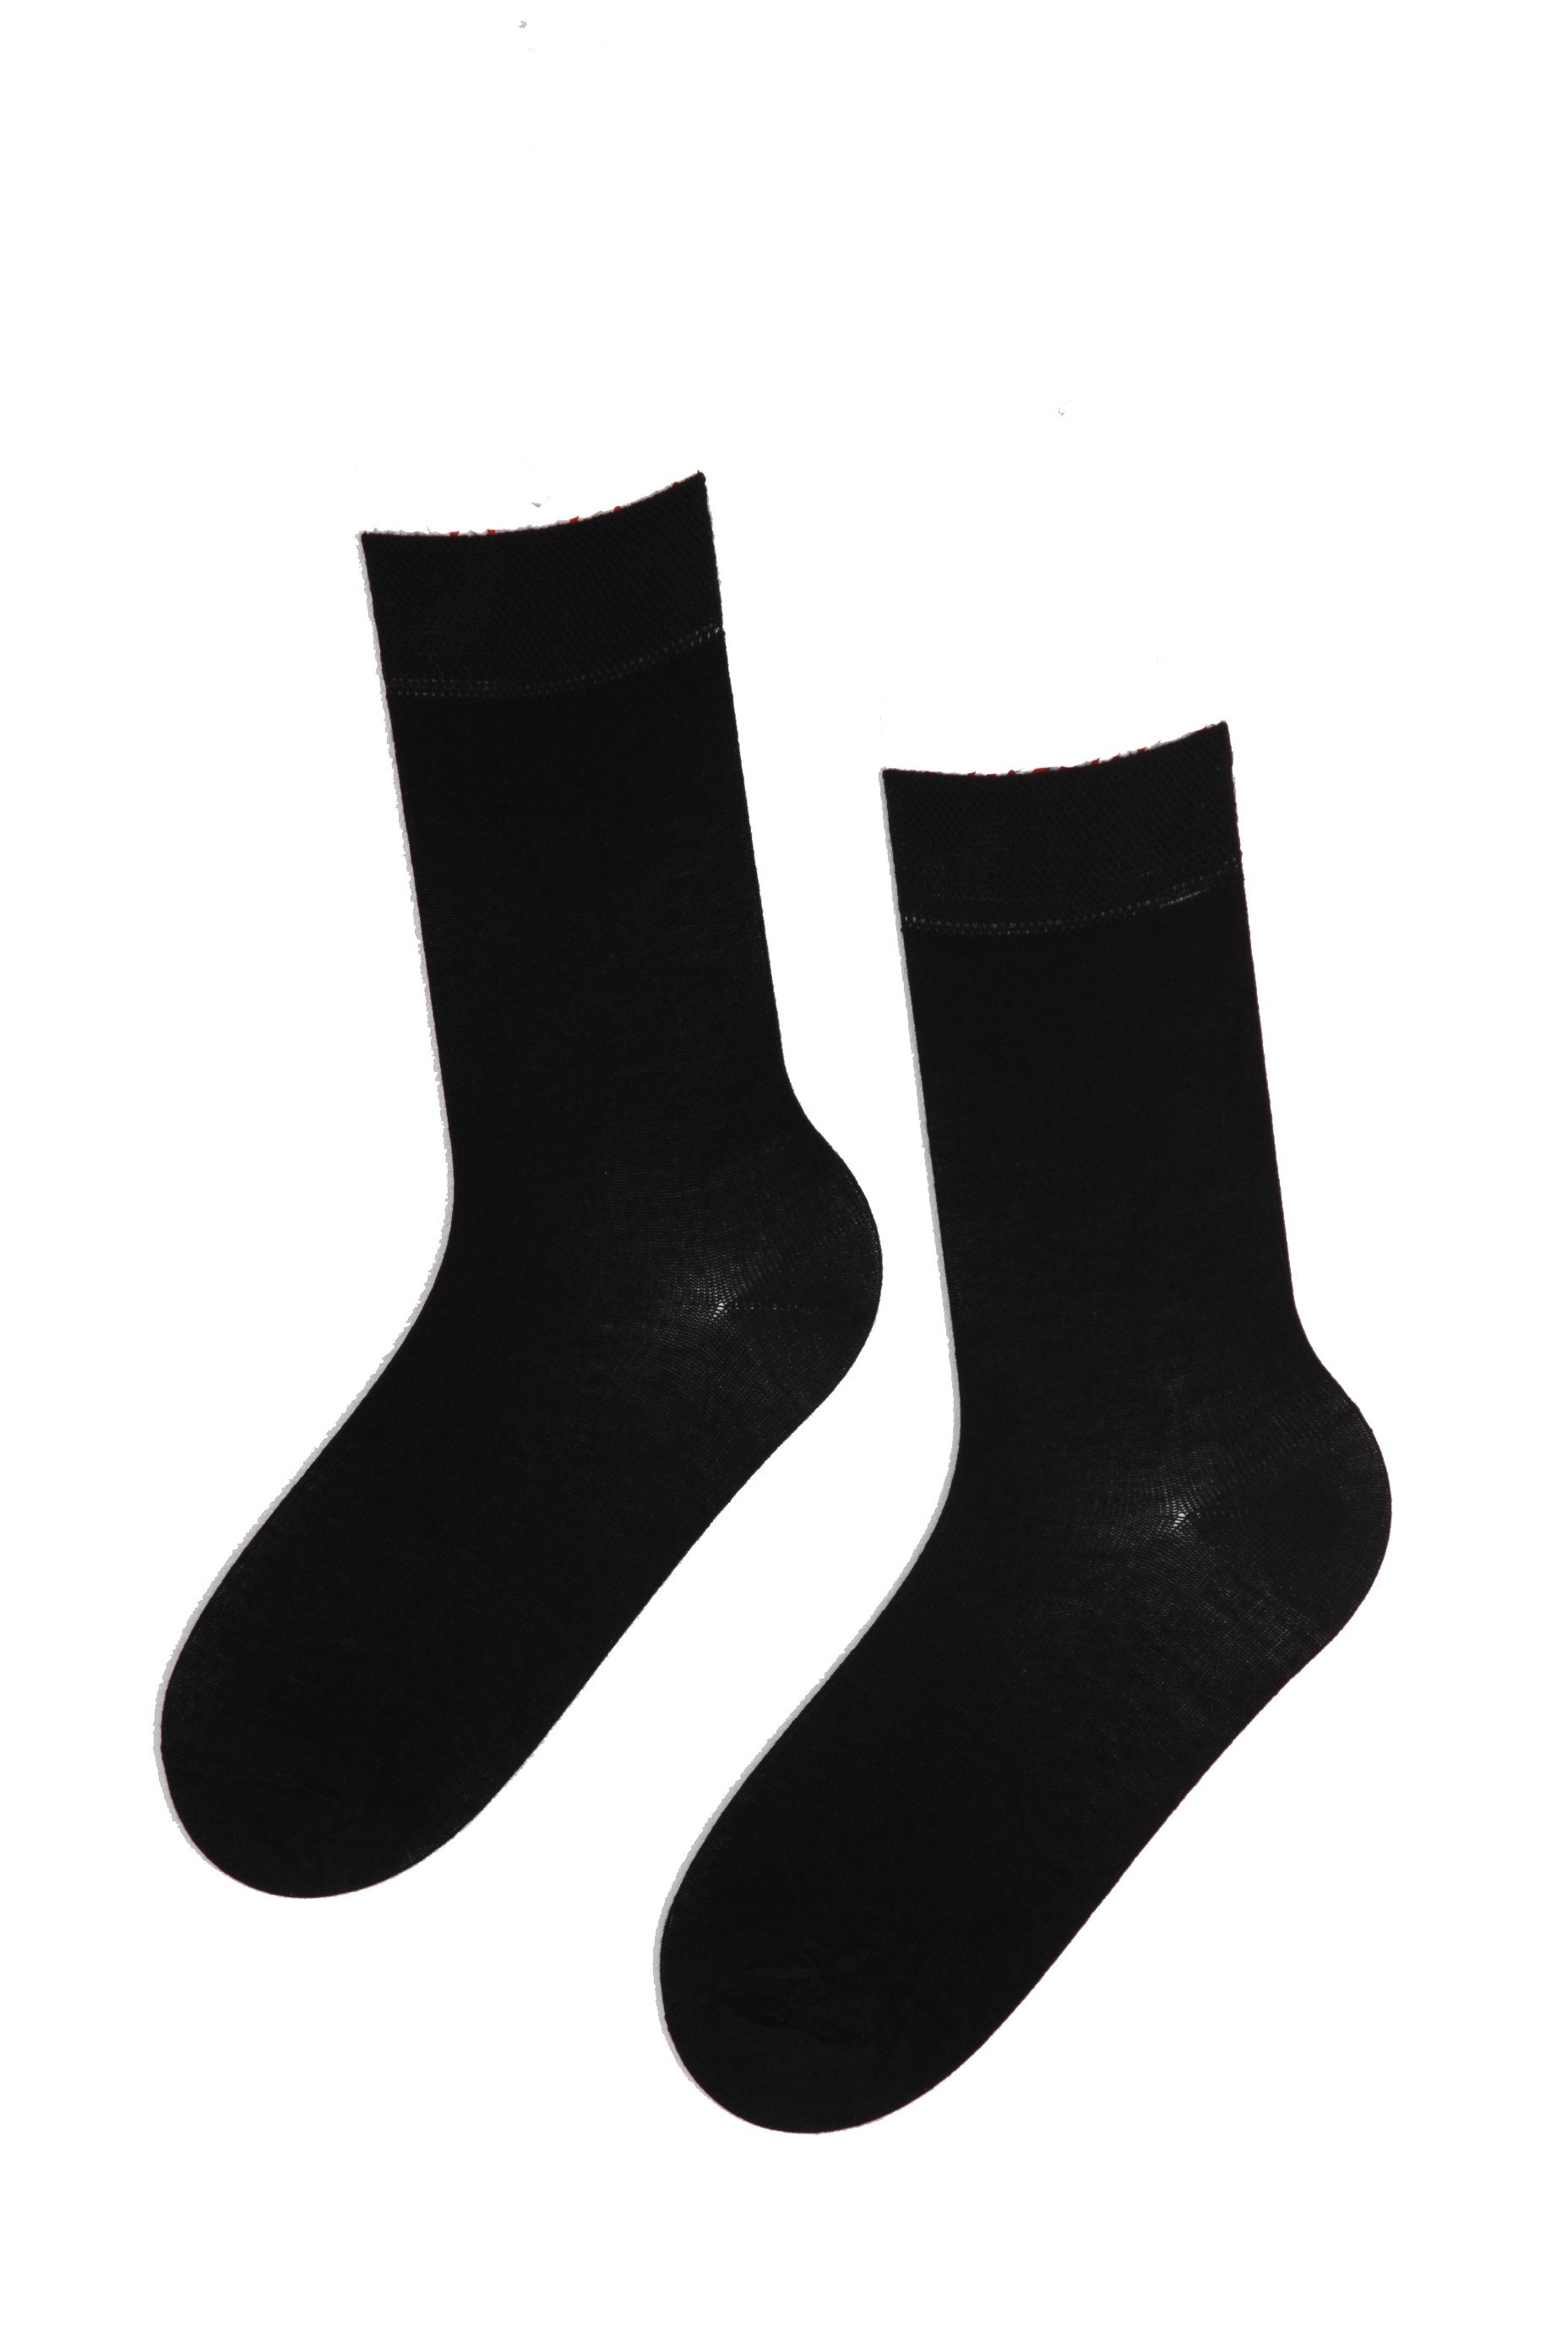 JANNE women's black socks